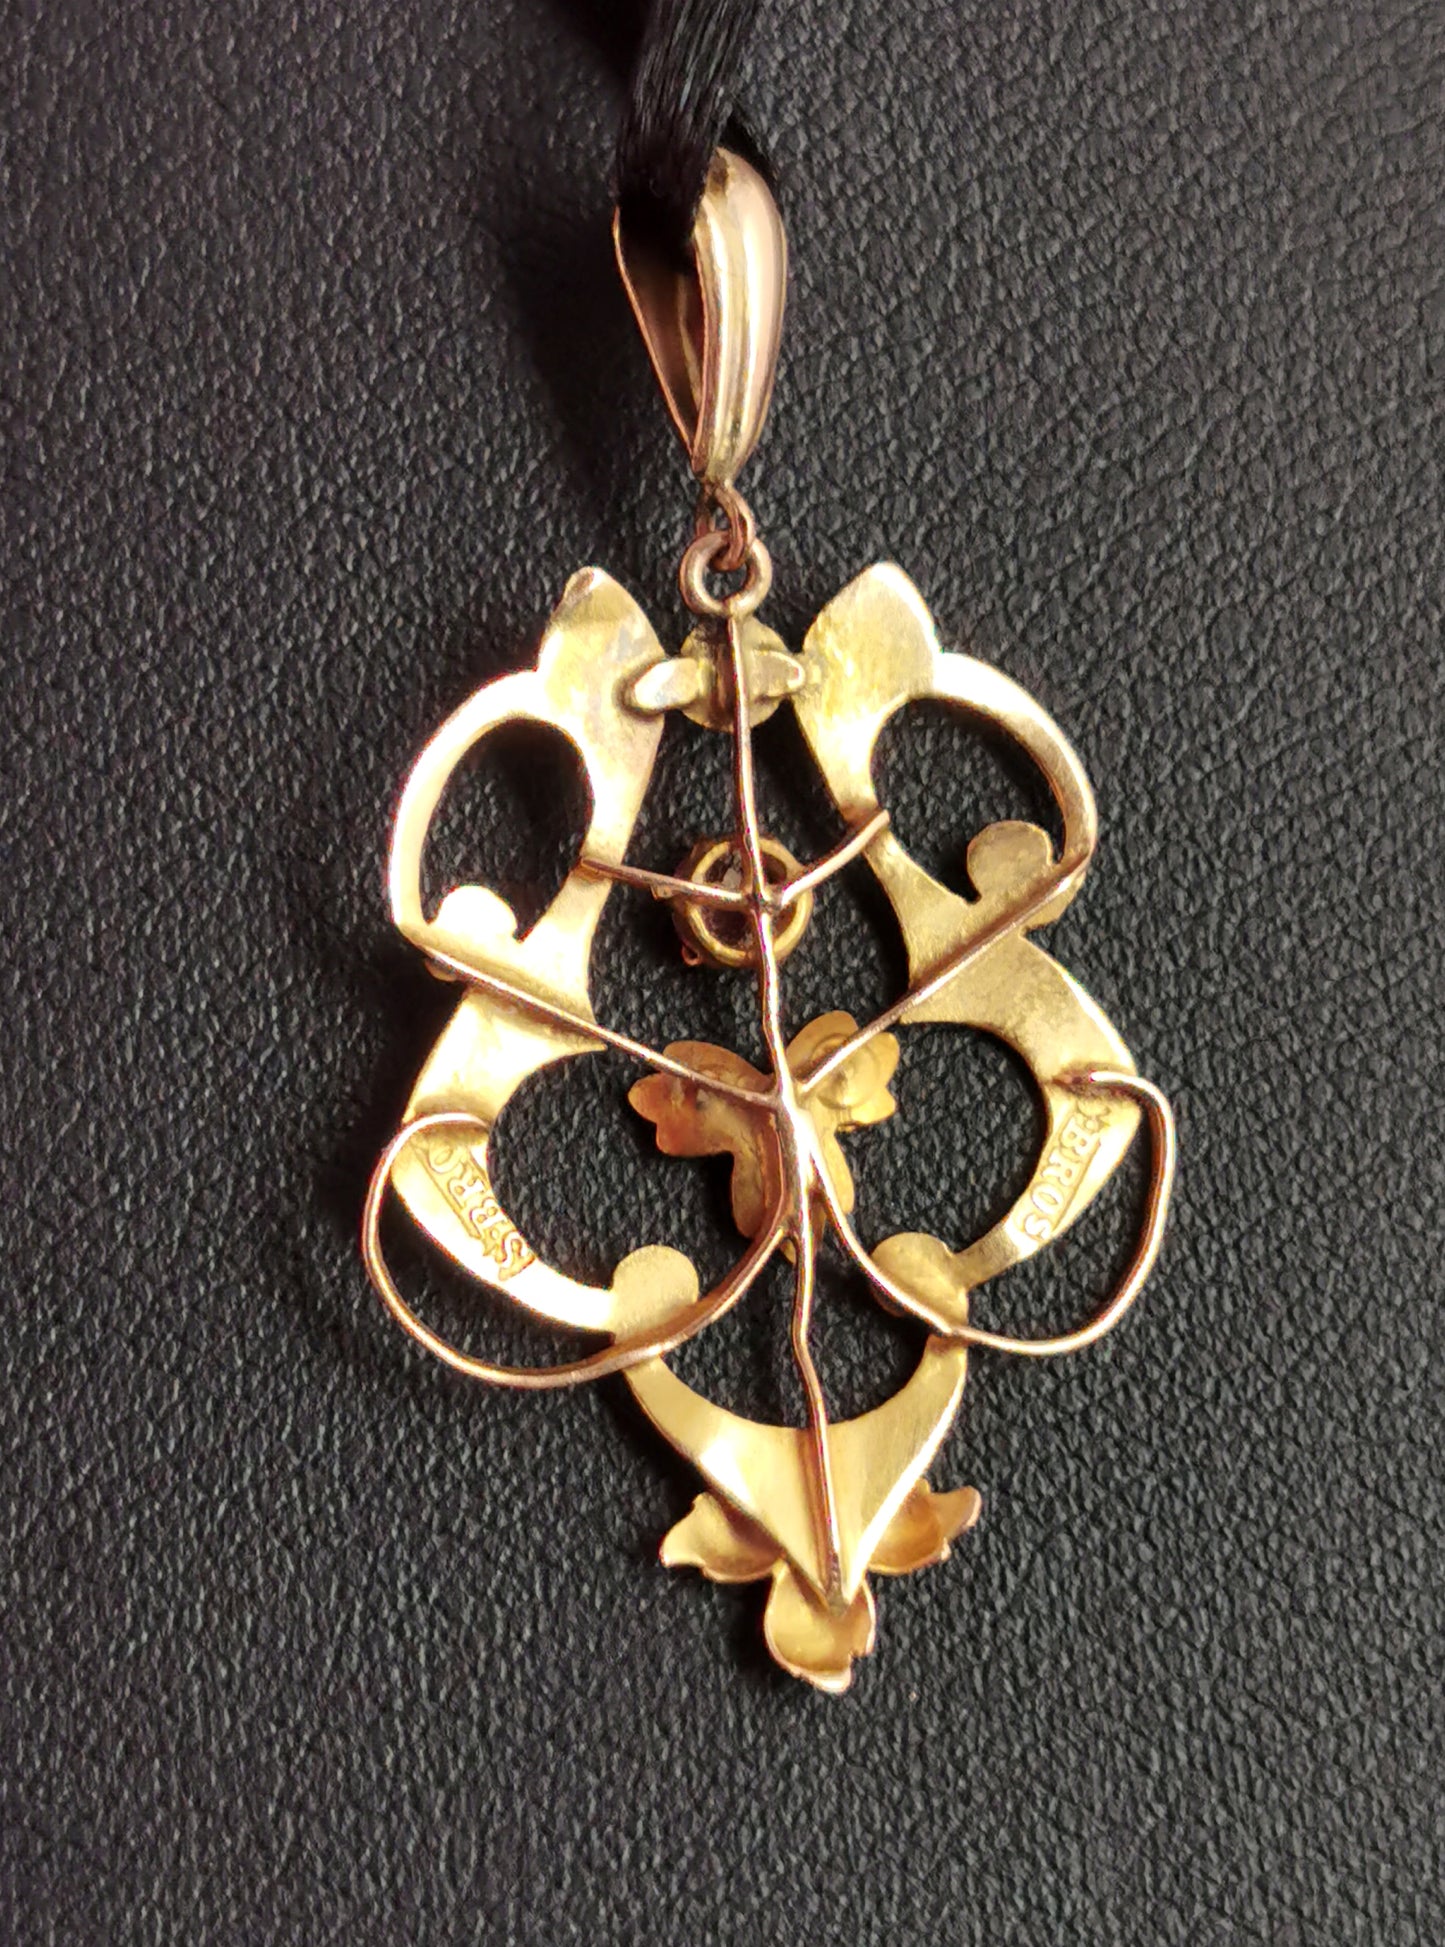 Antique Art Nouveau lavalier pendant, Ruby and pearl, 9ct gold